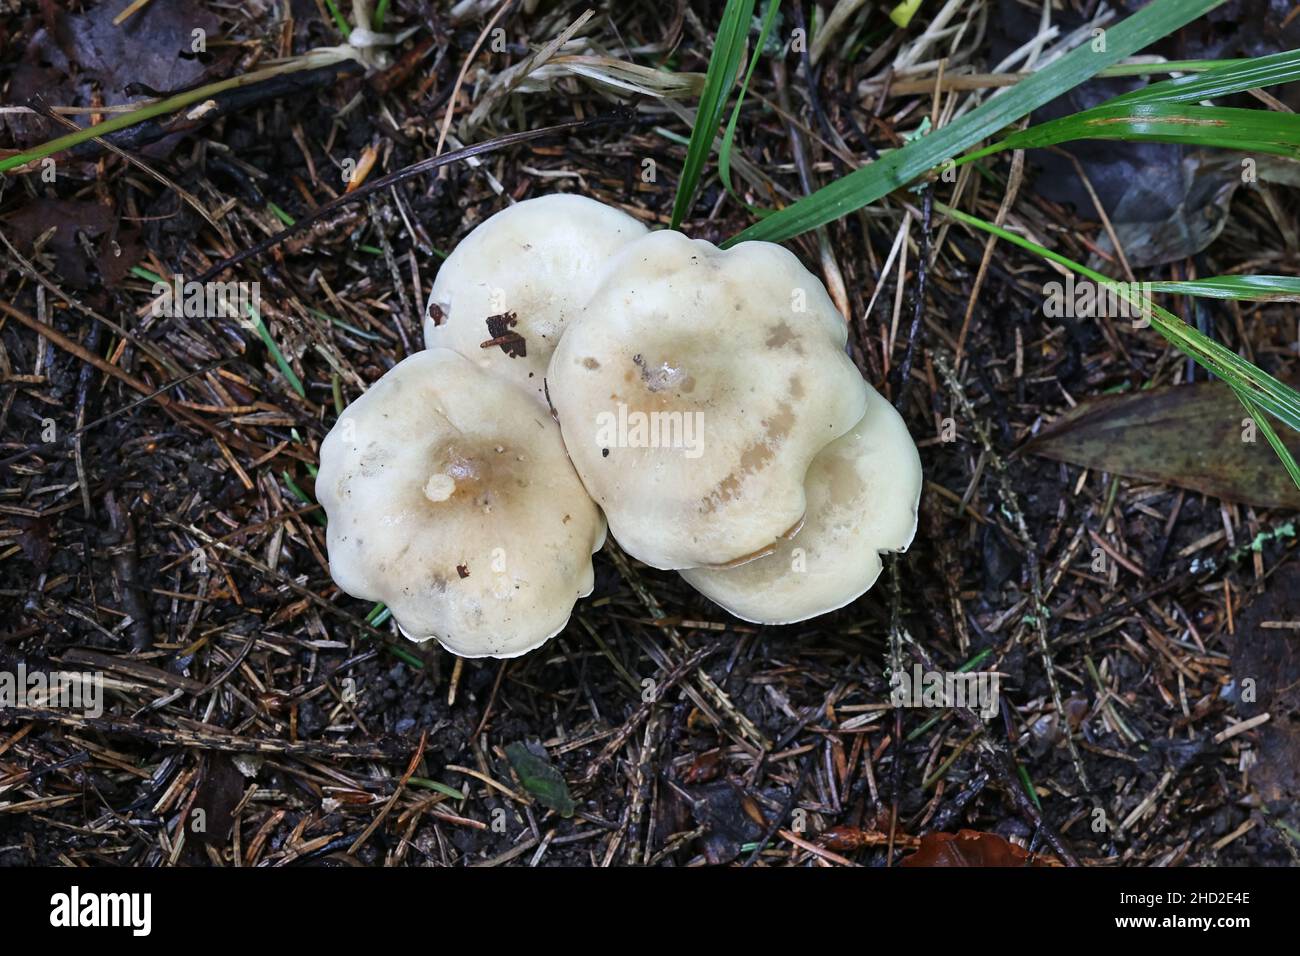 Hebeloma velutipes, allgemein bekannt als blass poisonpie oder Poison Pie, Wildpilz aus Finnland Stockfoto